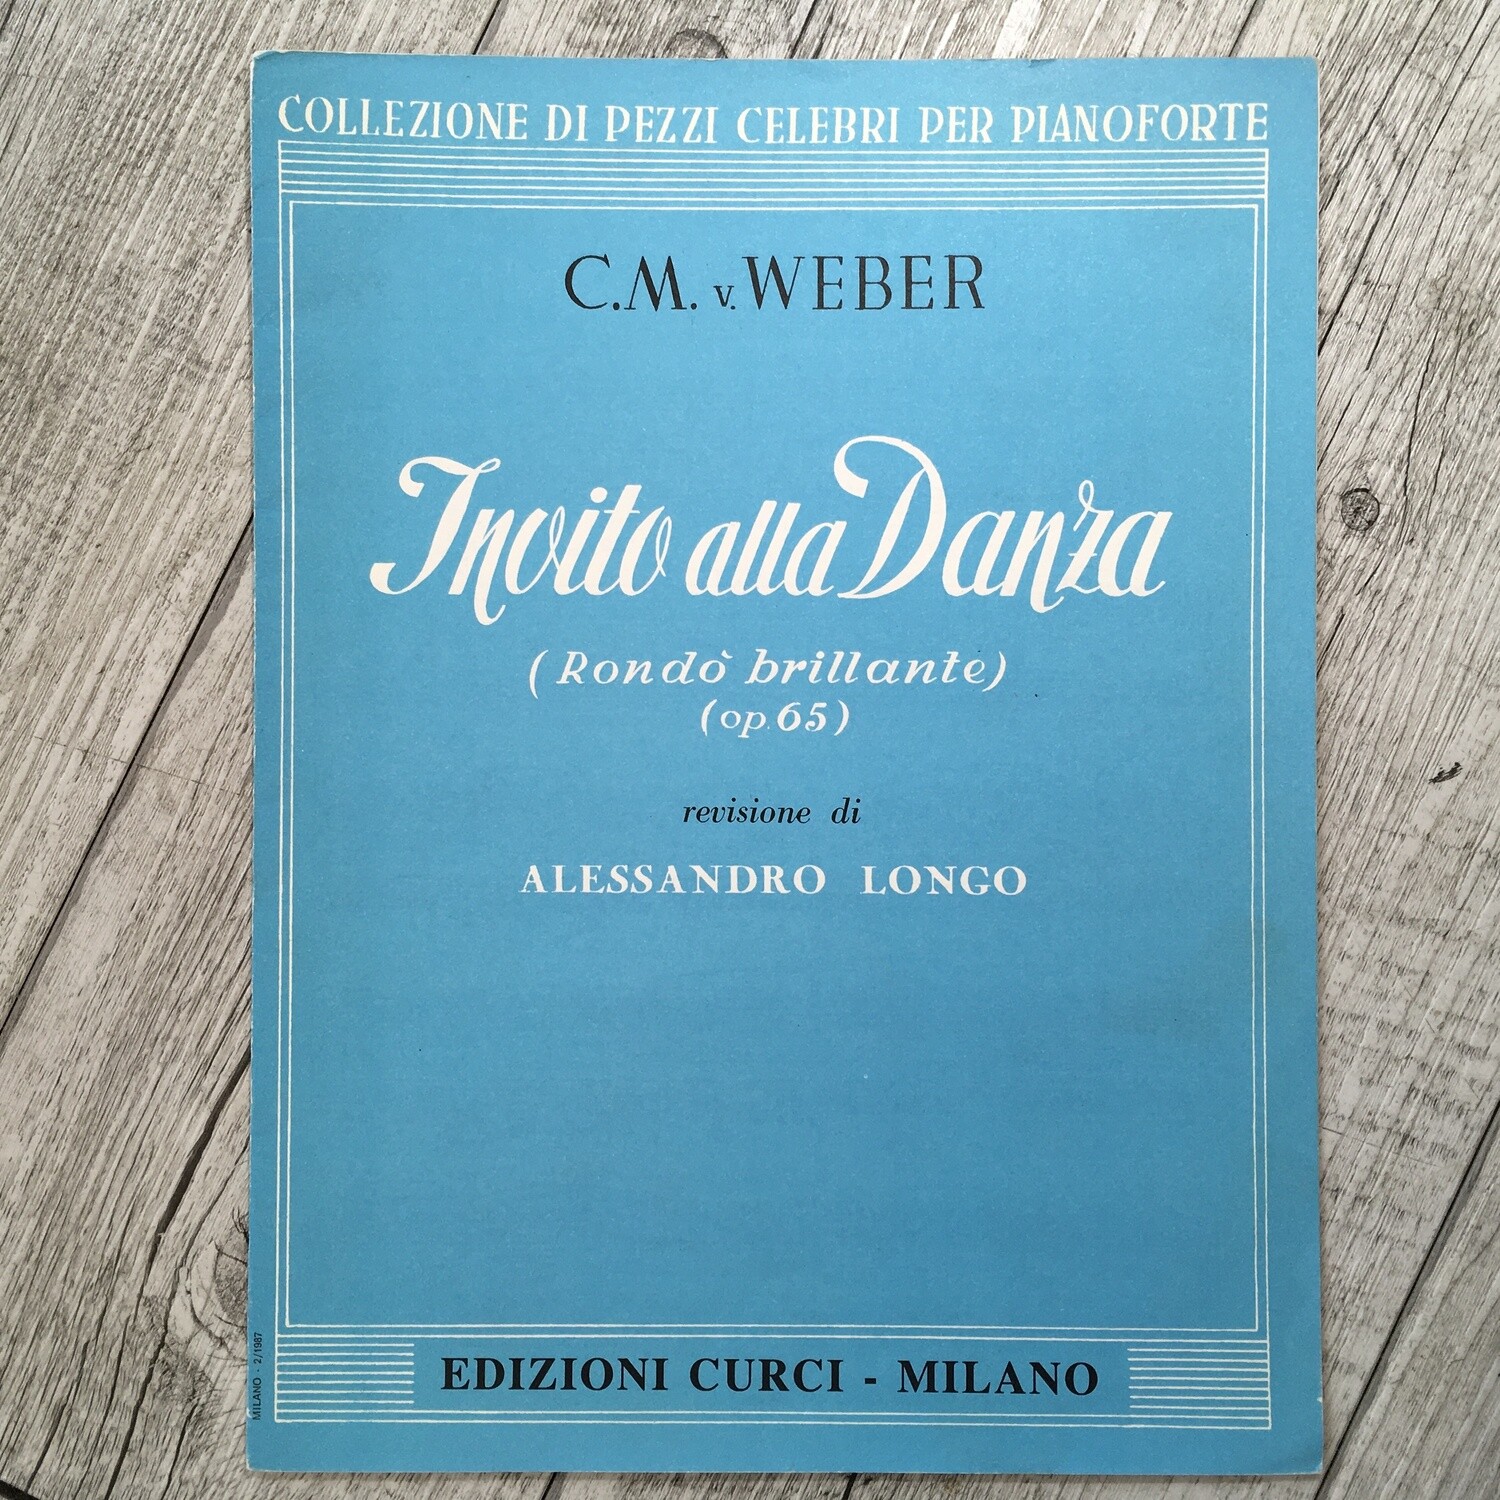 C.M WEBER - Invito alla danza Rondò brillante Op. 65